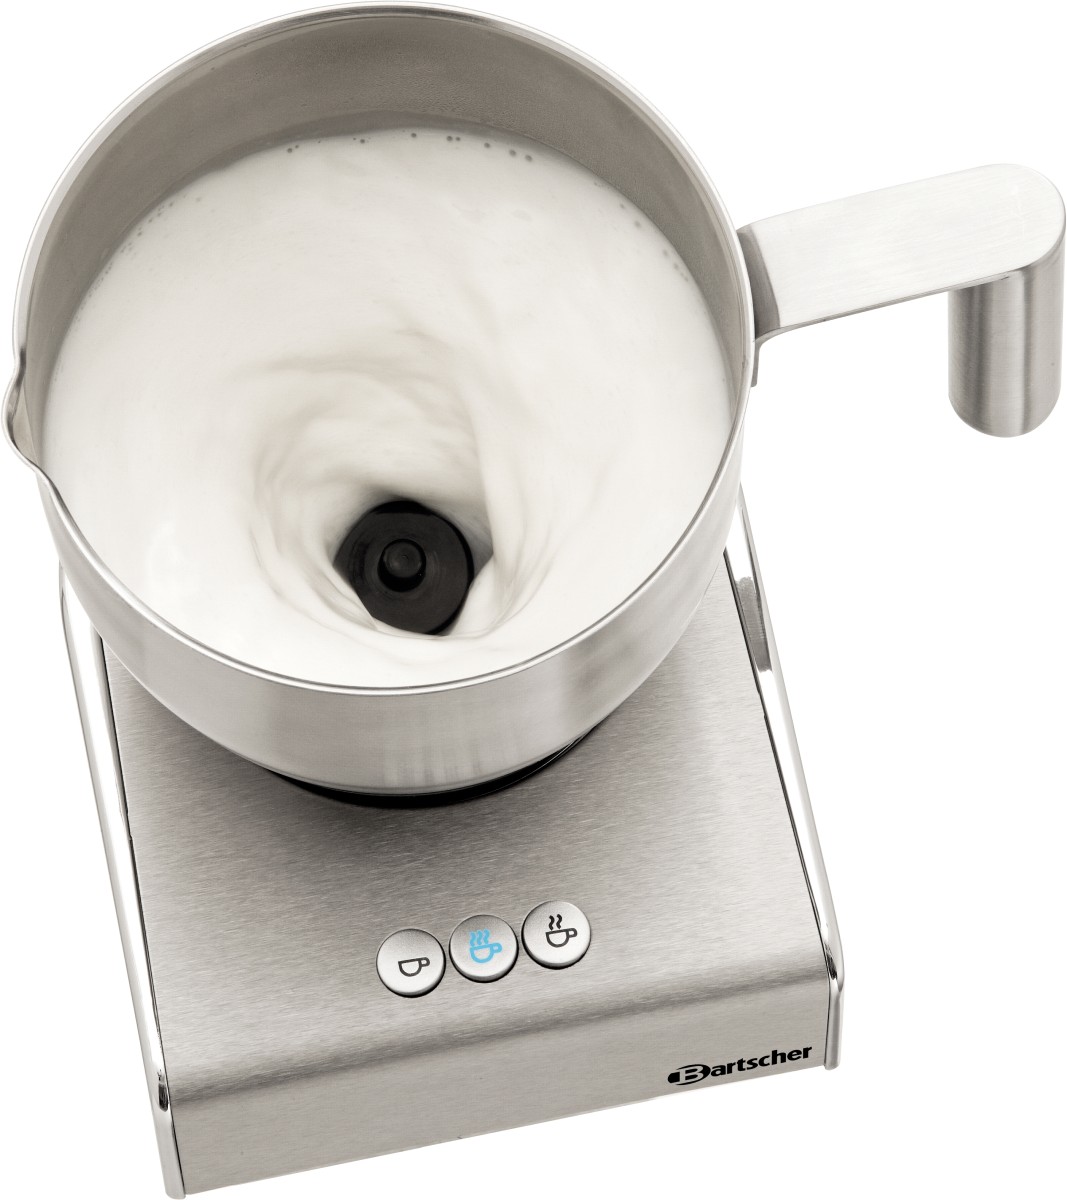  Bartscher Milk frother induction MSI400 